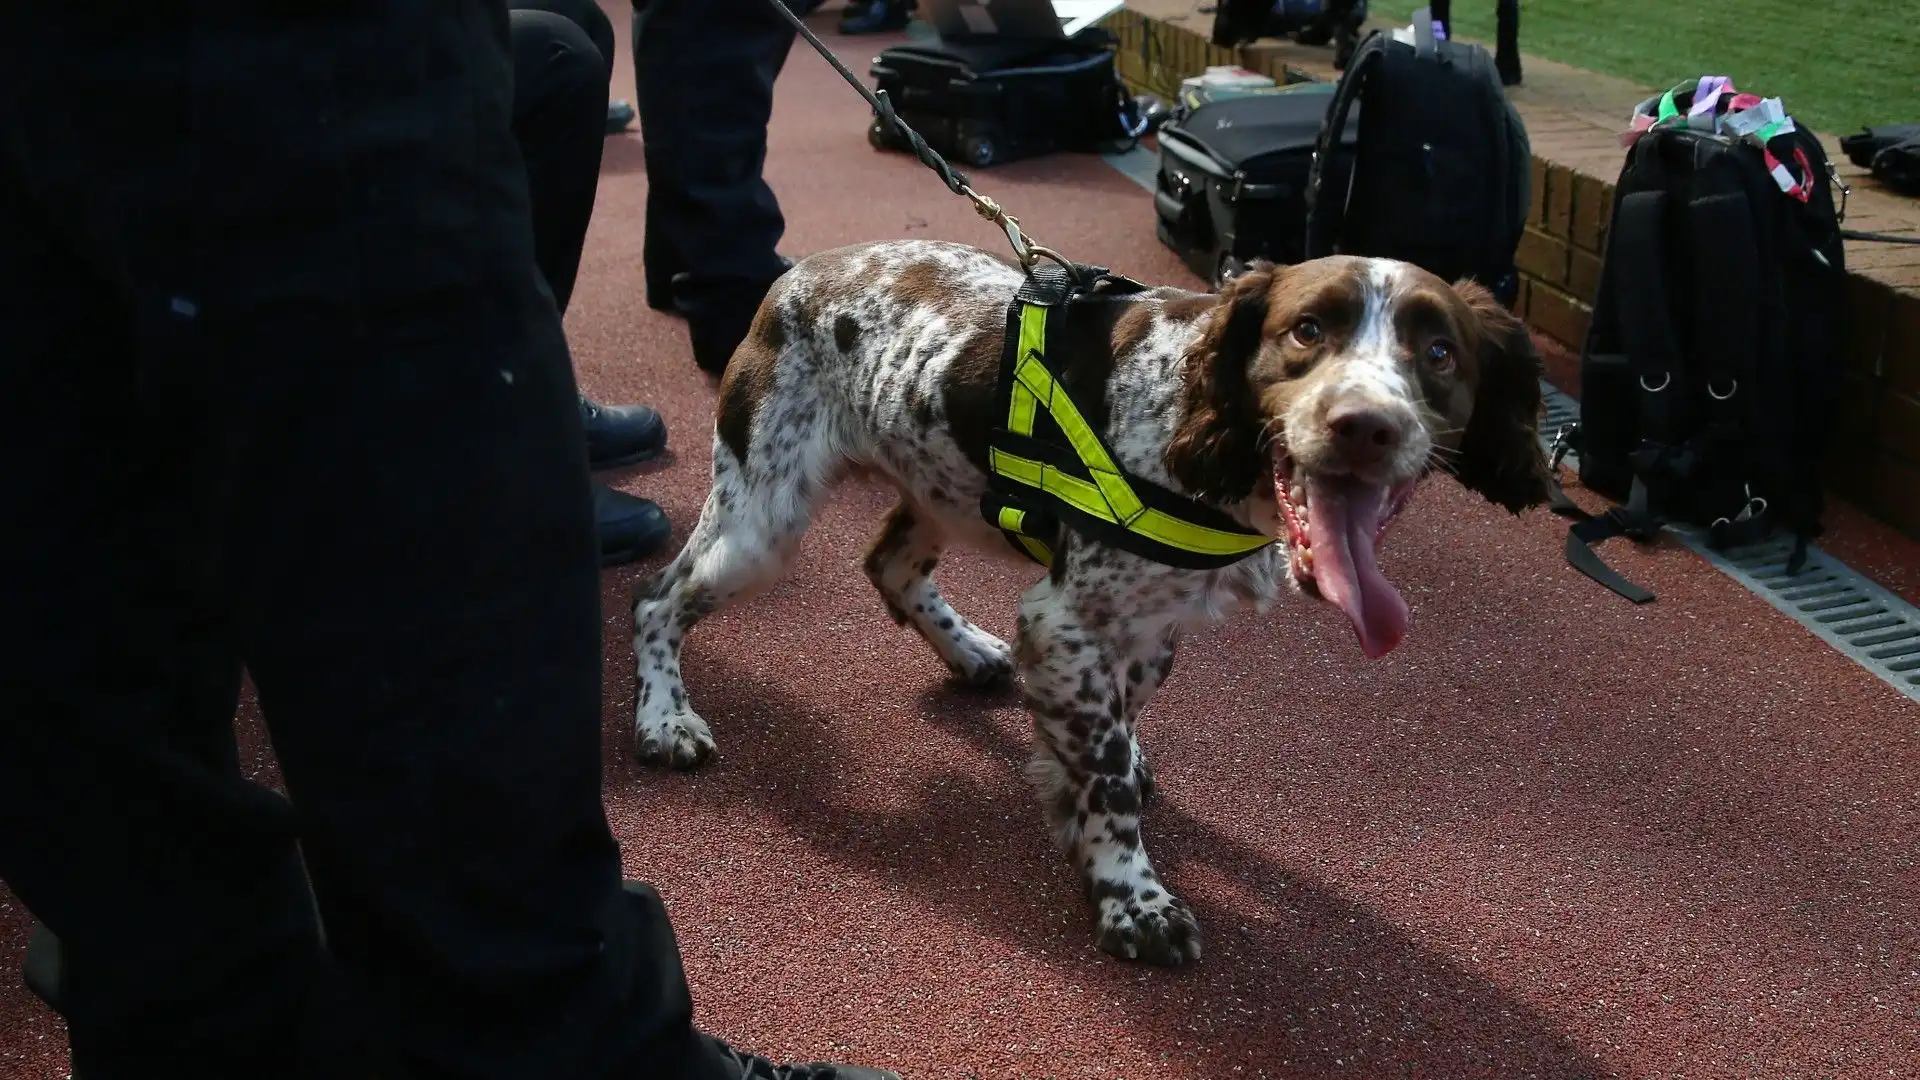 Gli addestratori lavorano costantemente con i cani poliziotto per mantenere e migliorare le loro competenze di ricerca e rilevamento